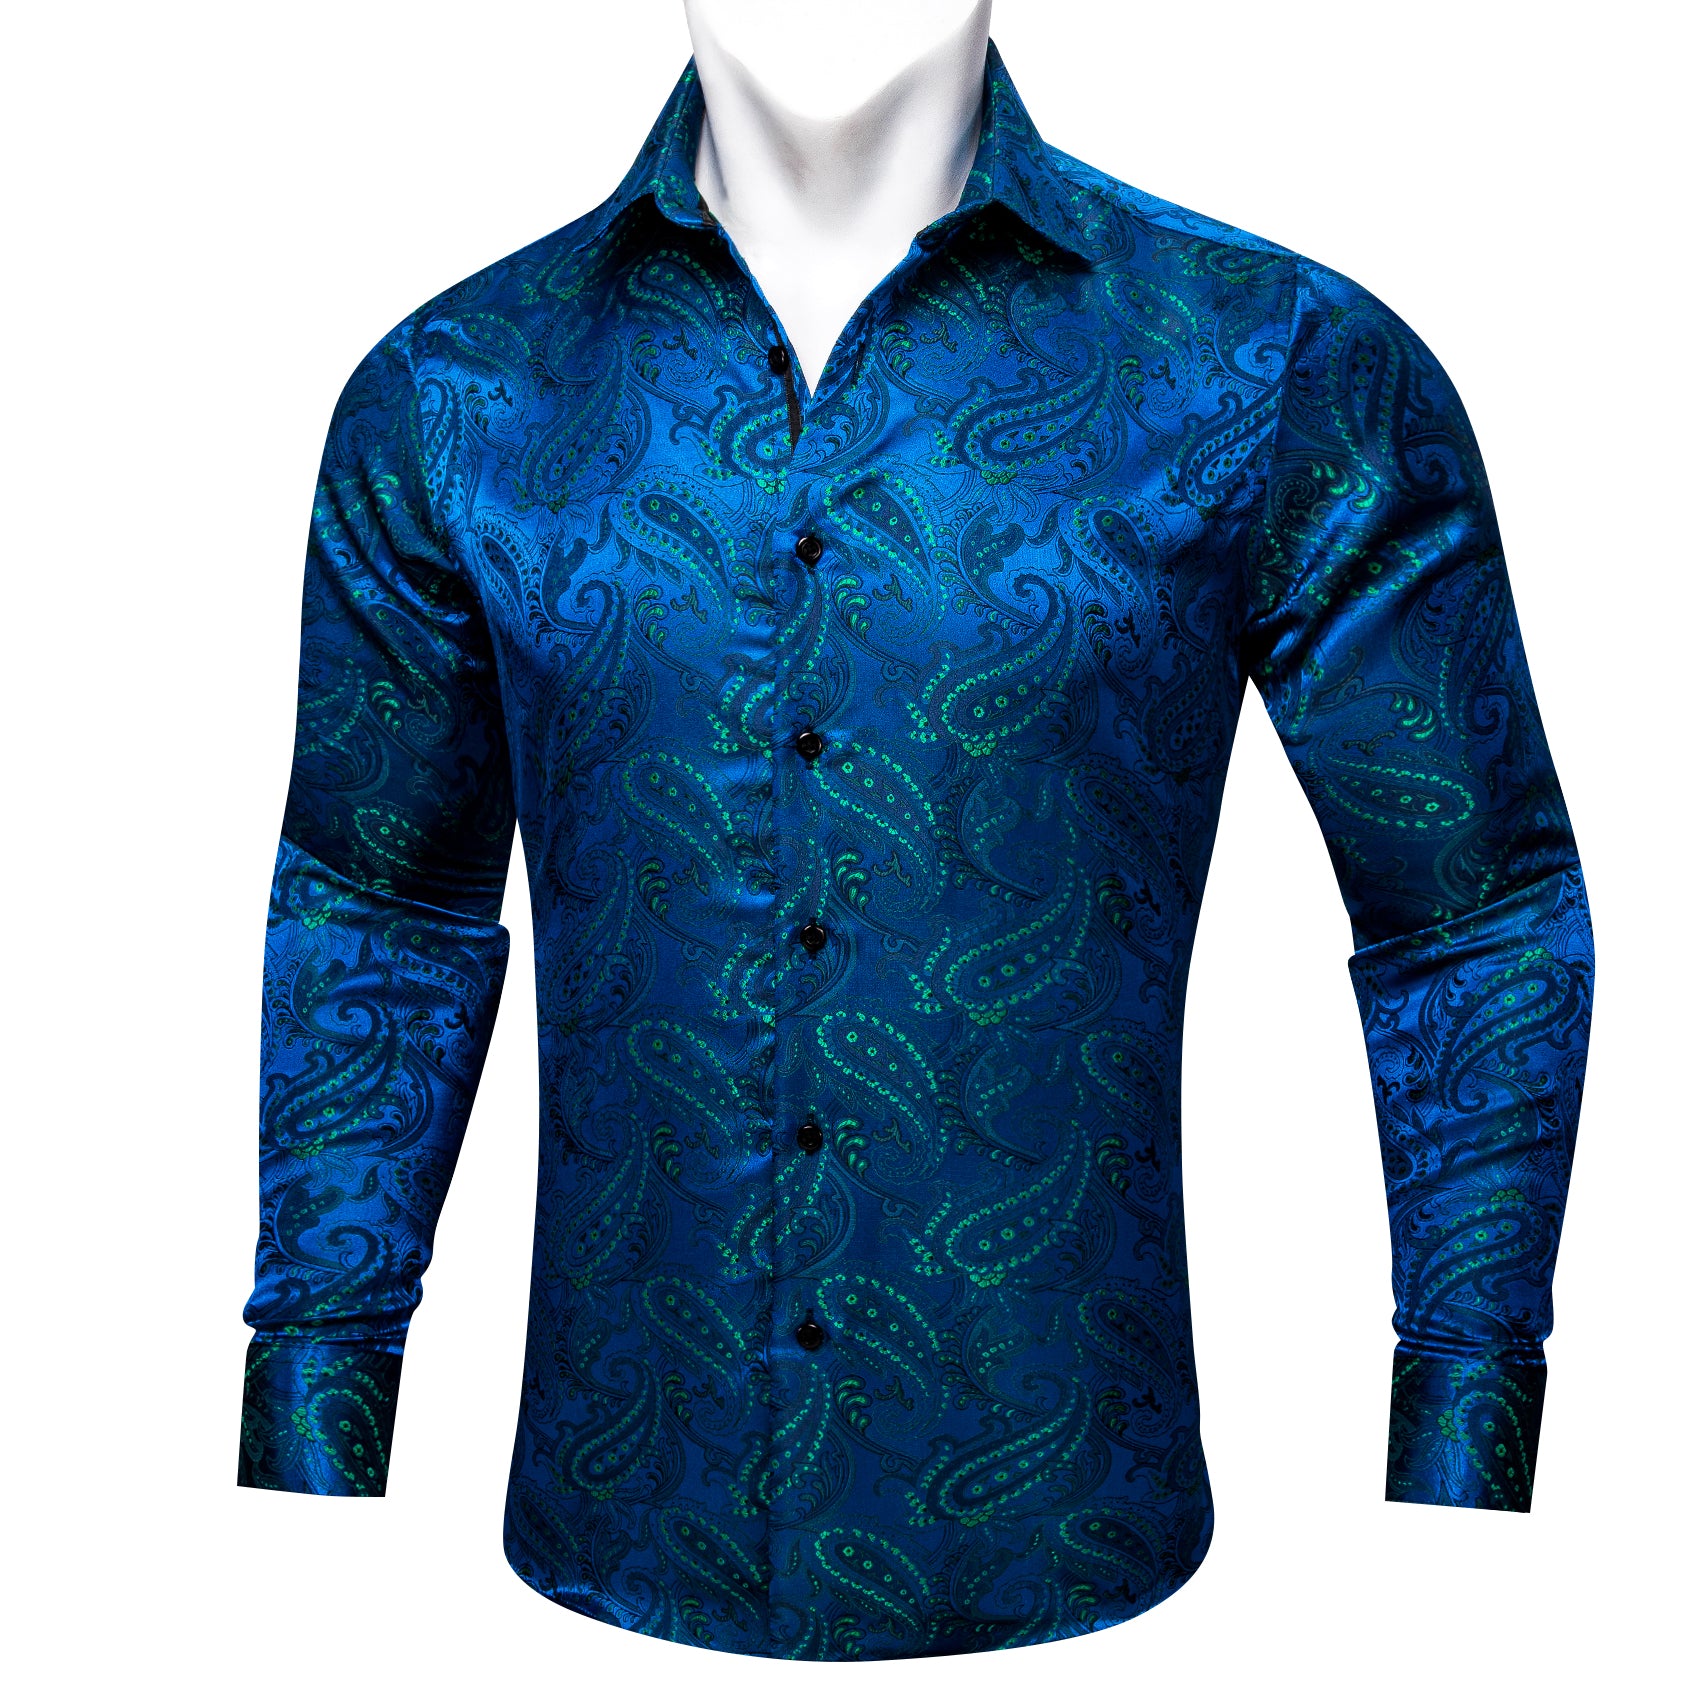 Barry.wang Button Down Shirt Peacock Blue Green Floral Silk Men's Shirt